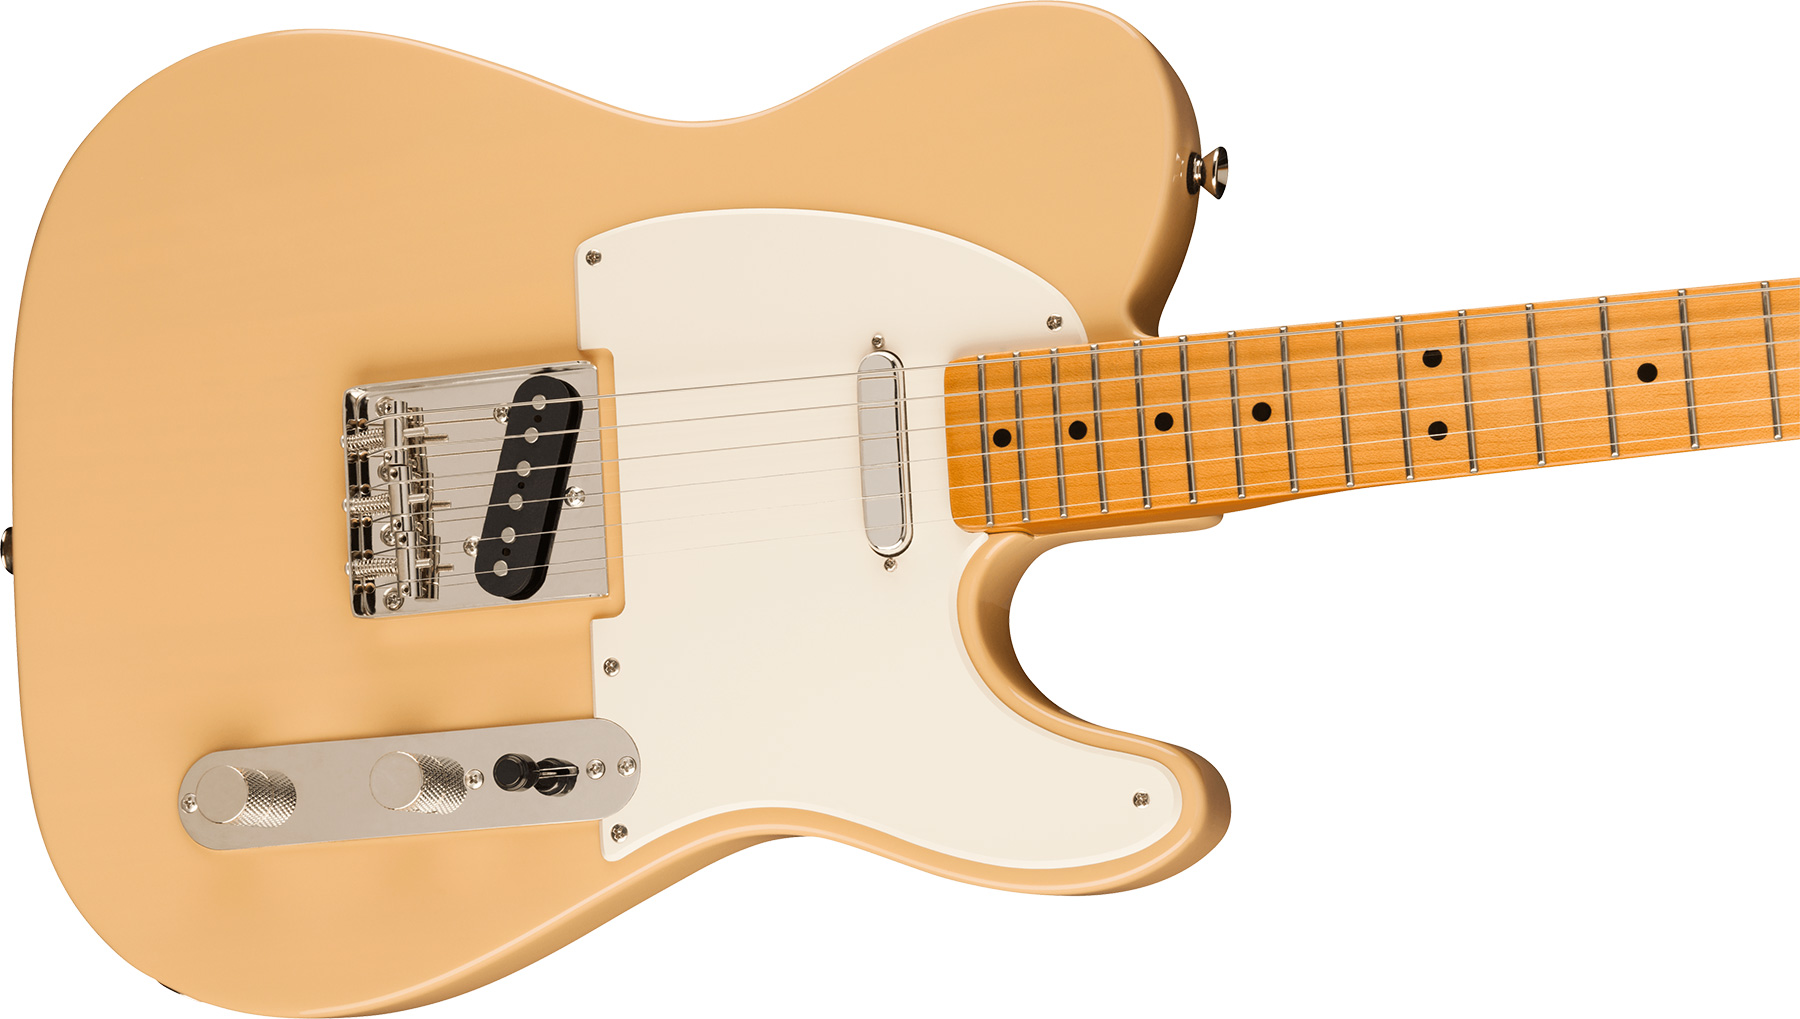 Squier Tele '50s Parchment Pickguard Classic Vibe Fsr 2s Ht Mn - Vintage Blonde - Guitarra eléctrica con forma de tel - Variation 2